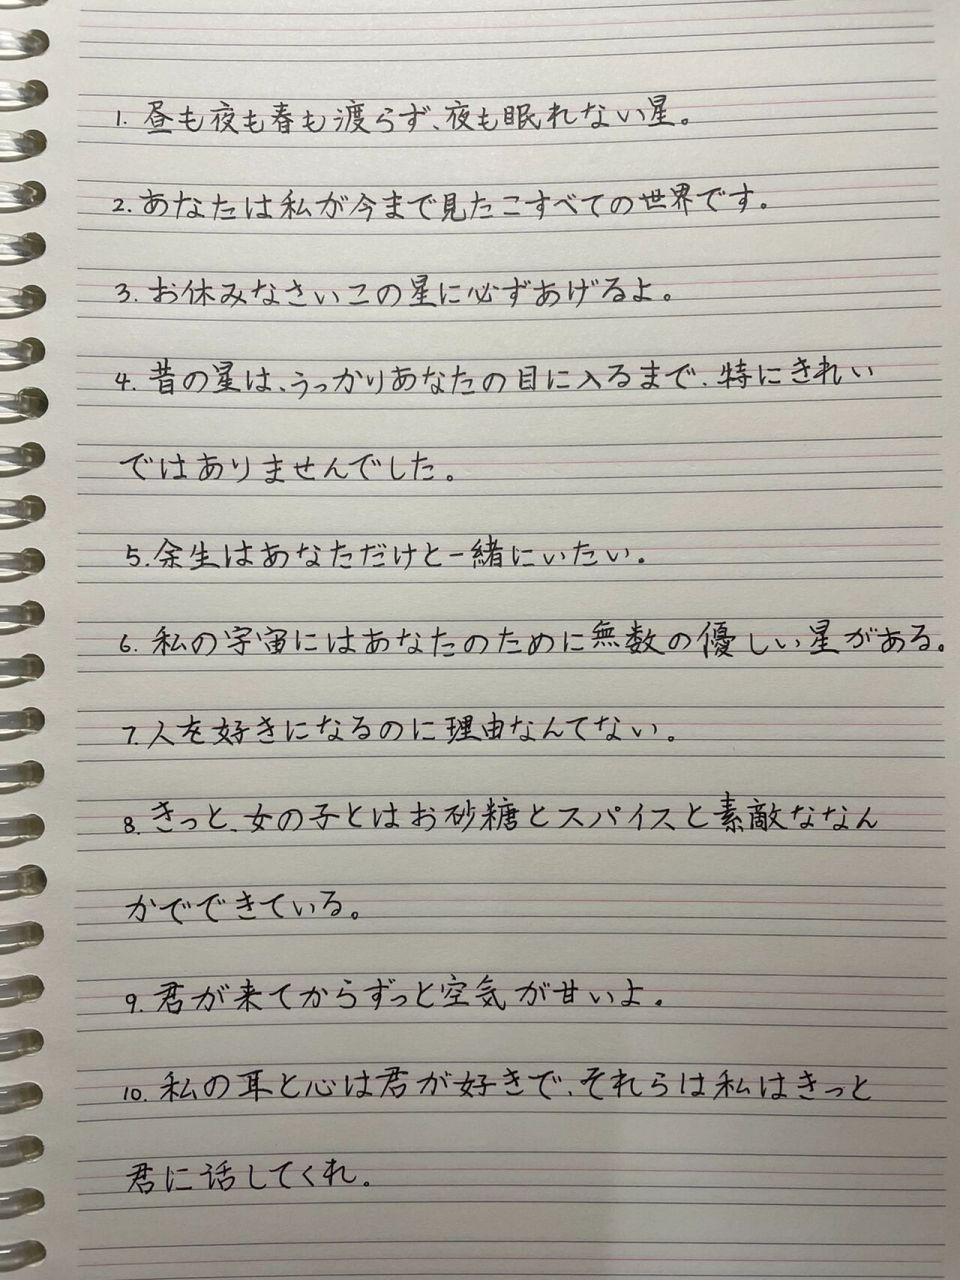 日语手写